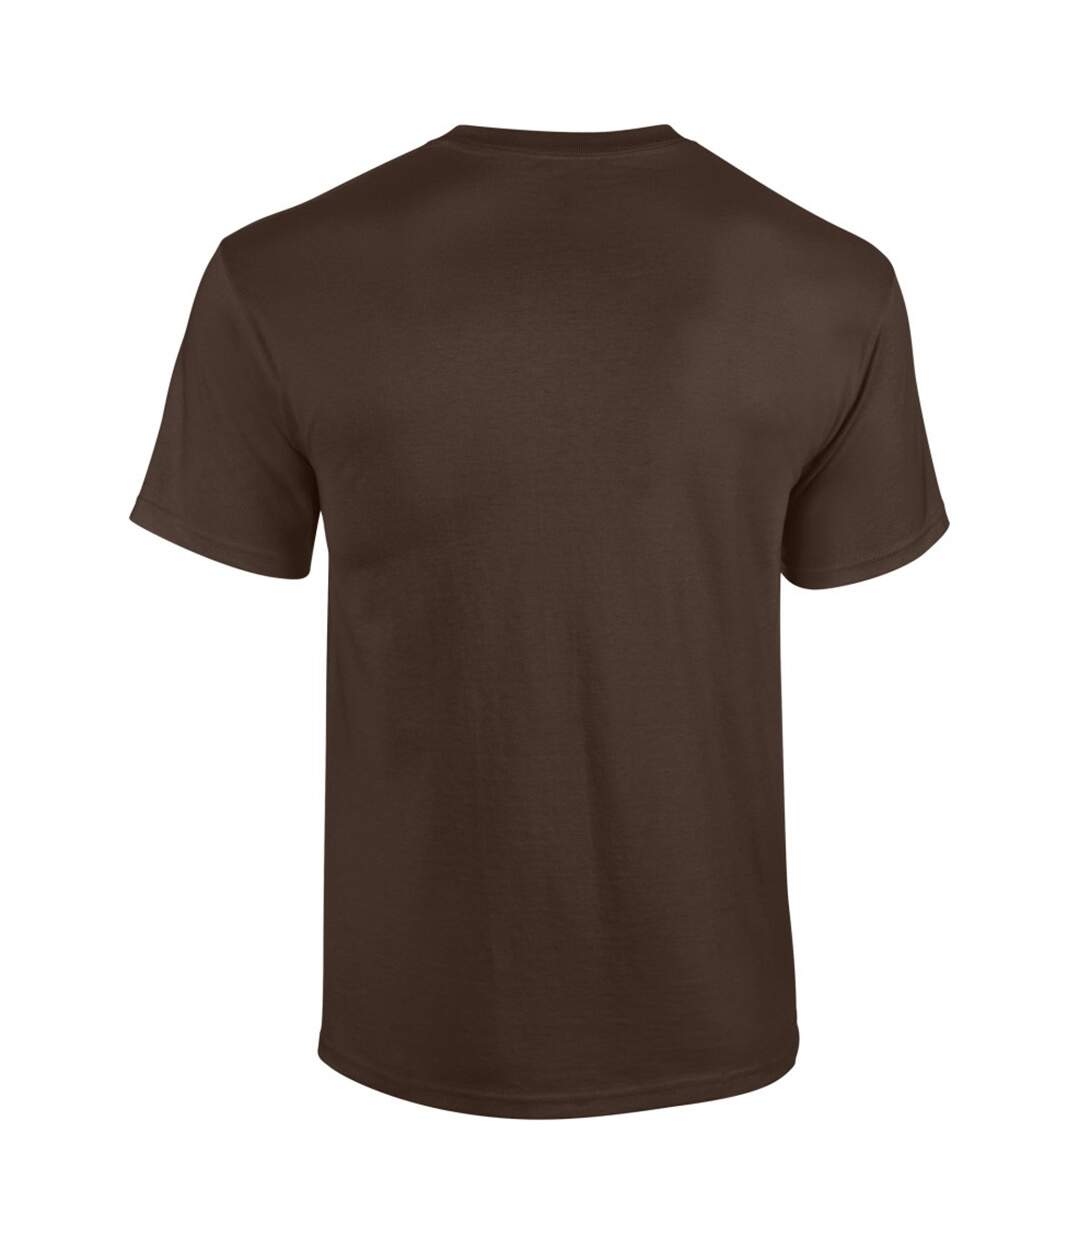 Gildan - T-shirt à manches courtes - Homme (Marron foncé) - UTBC481